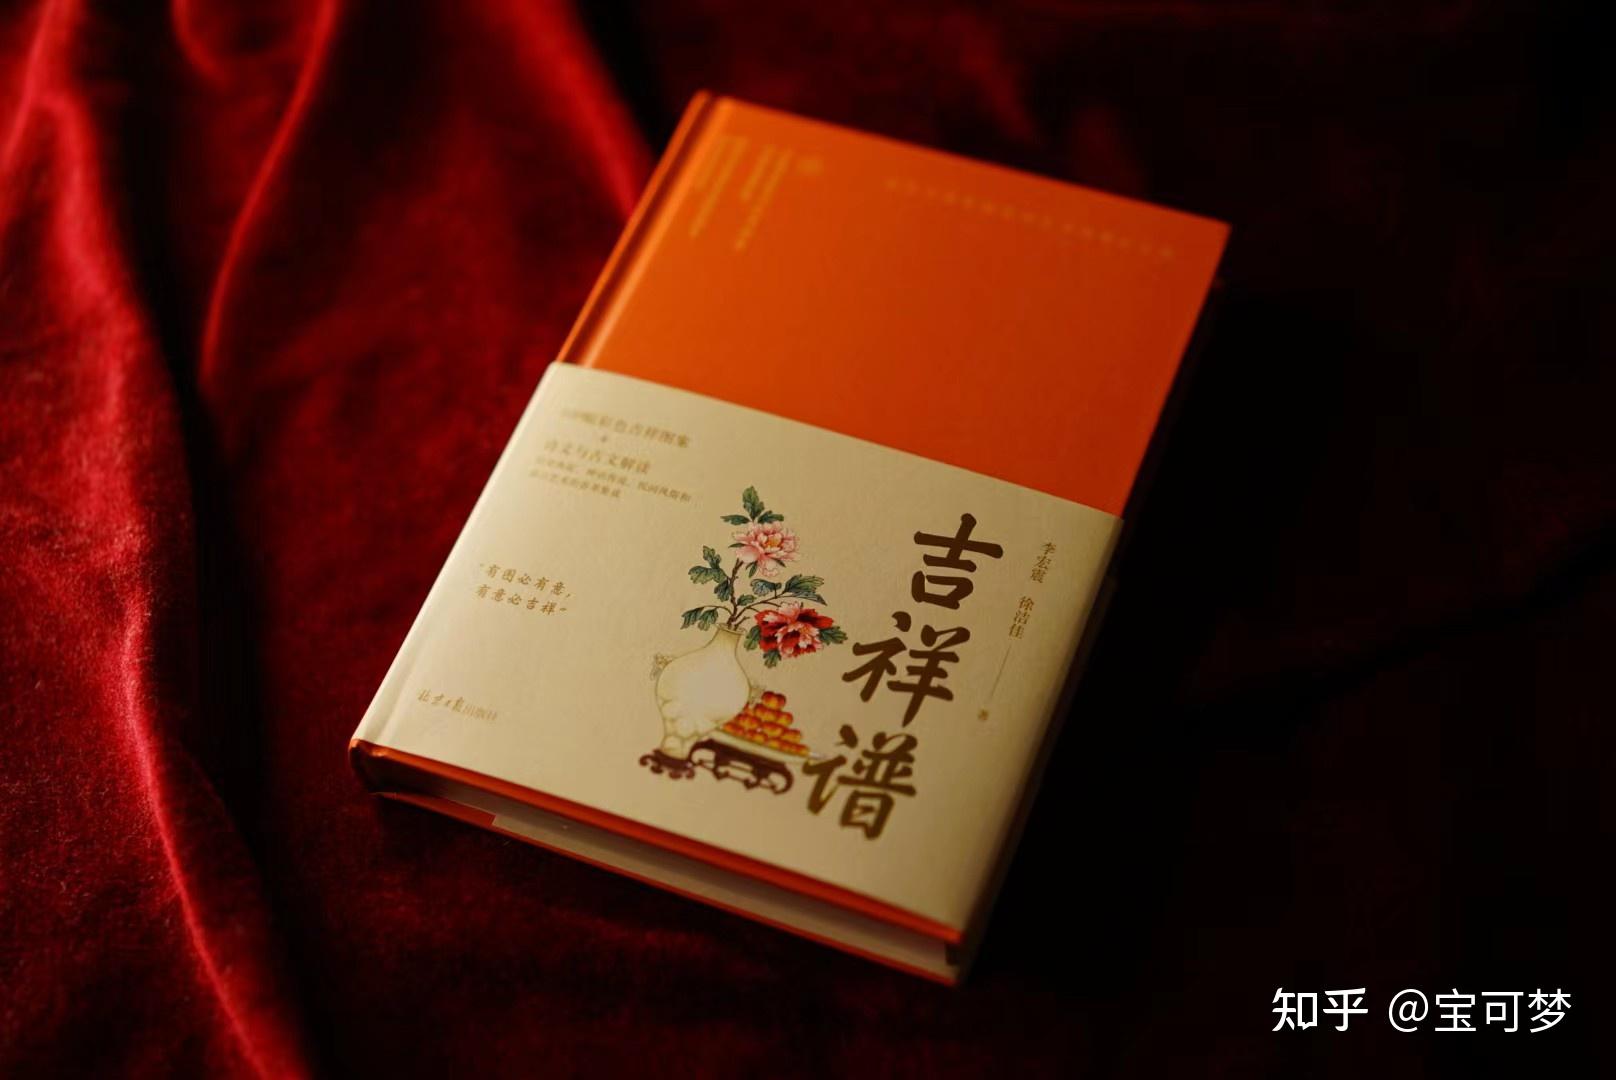 介绍中国传统图案吉祥图案的好书